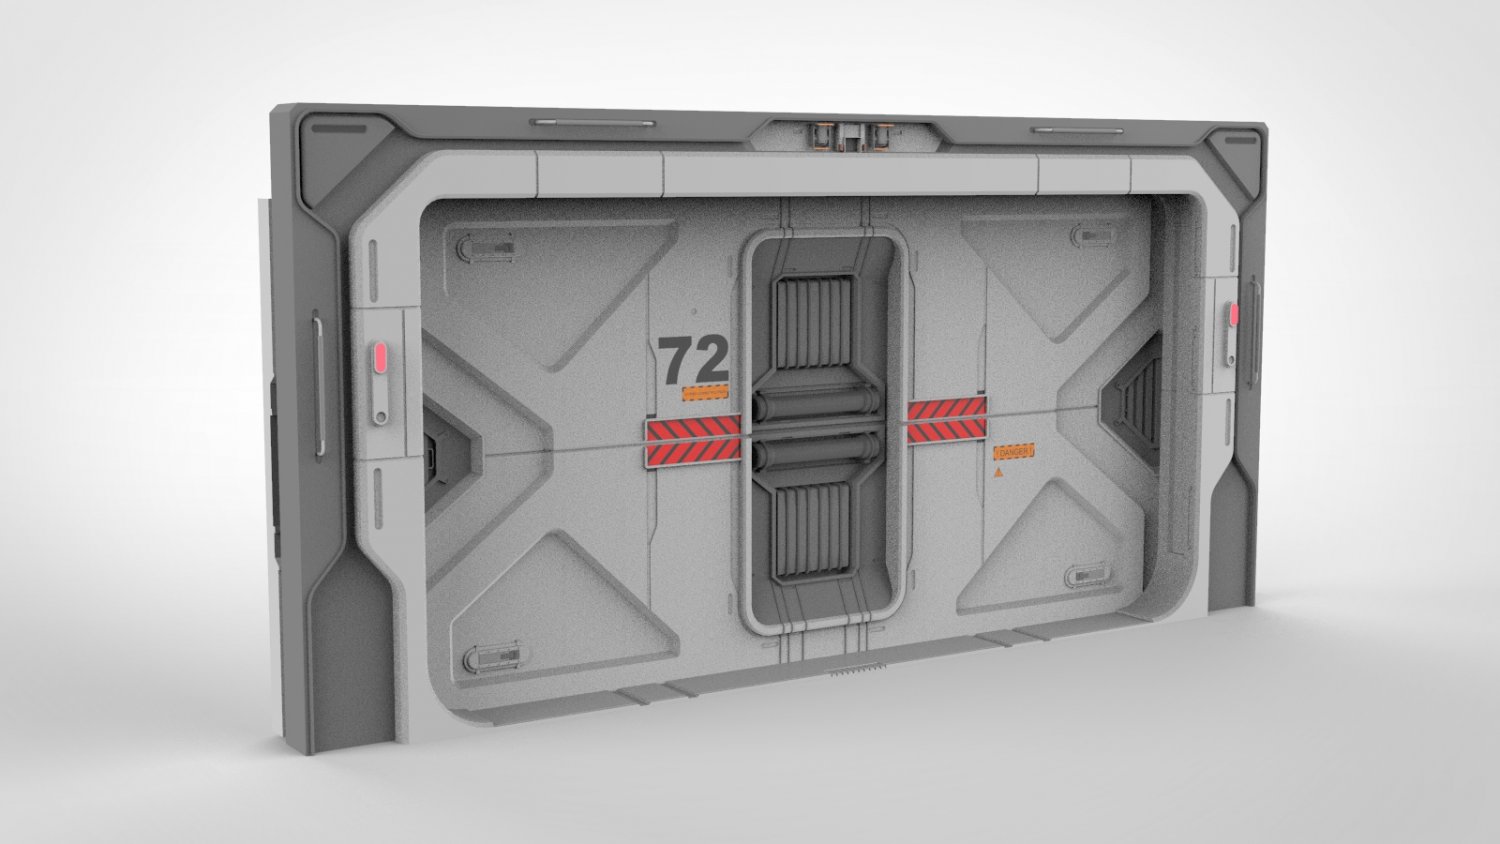 sci fi door concept